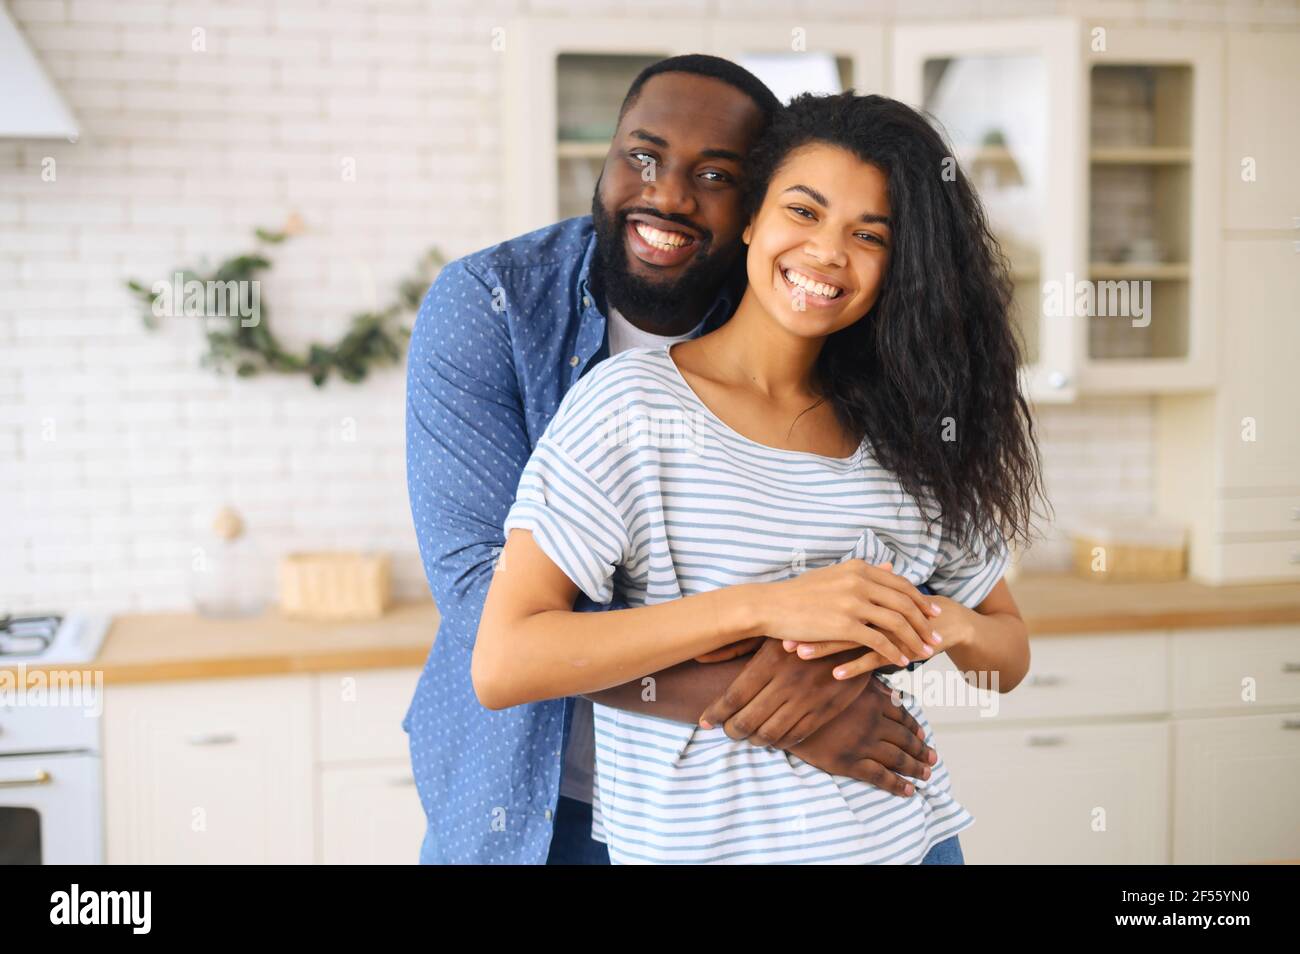 Glücklich verheiratet multirassischen Paar posiert für ein Foto in der Küche, die glücklichsten Herzen machen die glücklichsten Häuser, afrikanischen Mann umarmt lateinische Frau mit dicken lockigen Haaren von hinten, harmonische Beziehungen Stockfoto